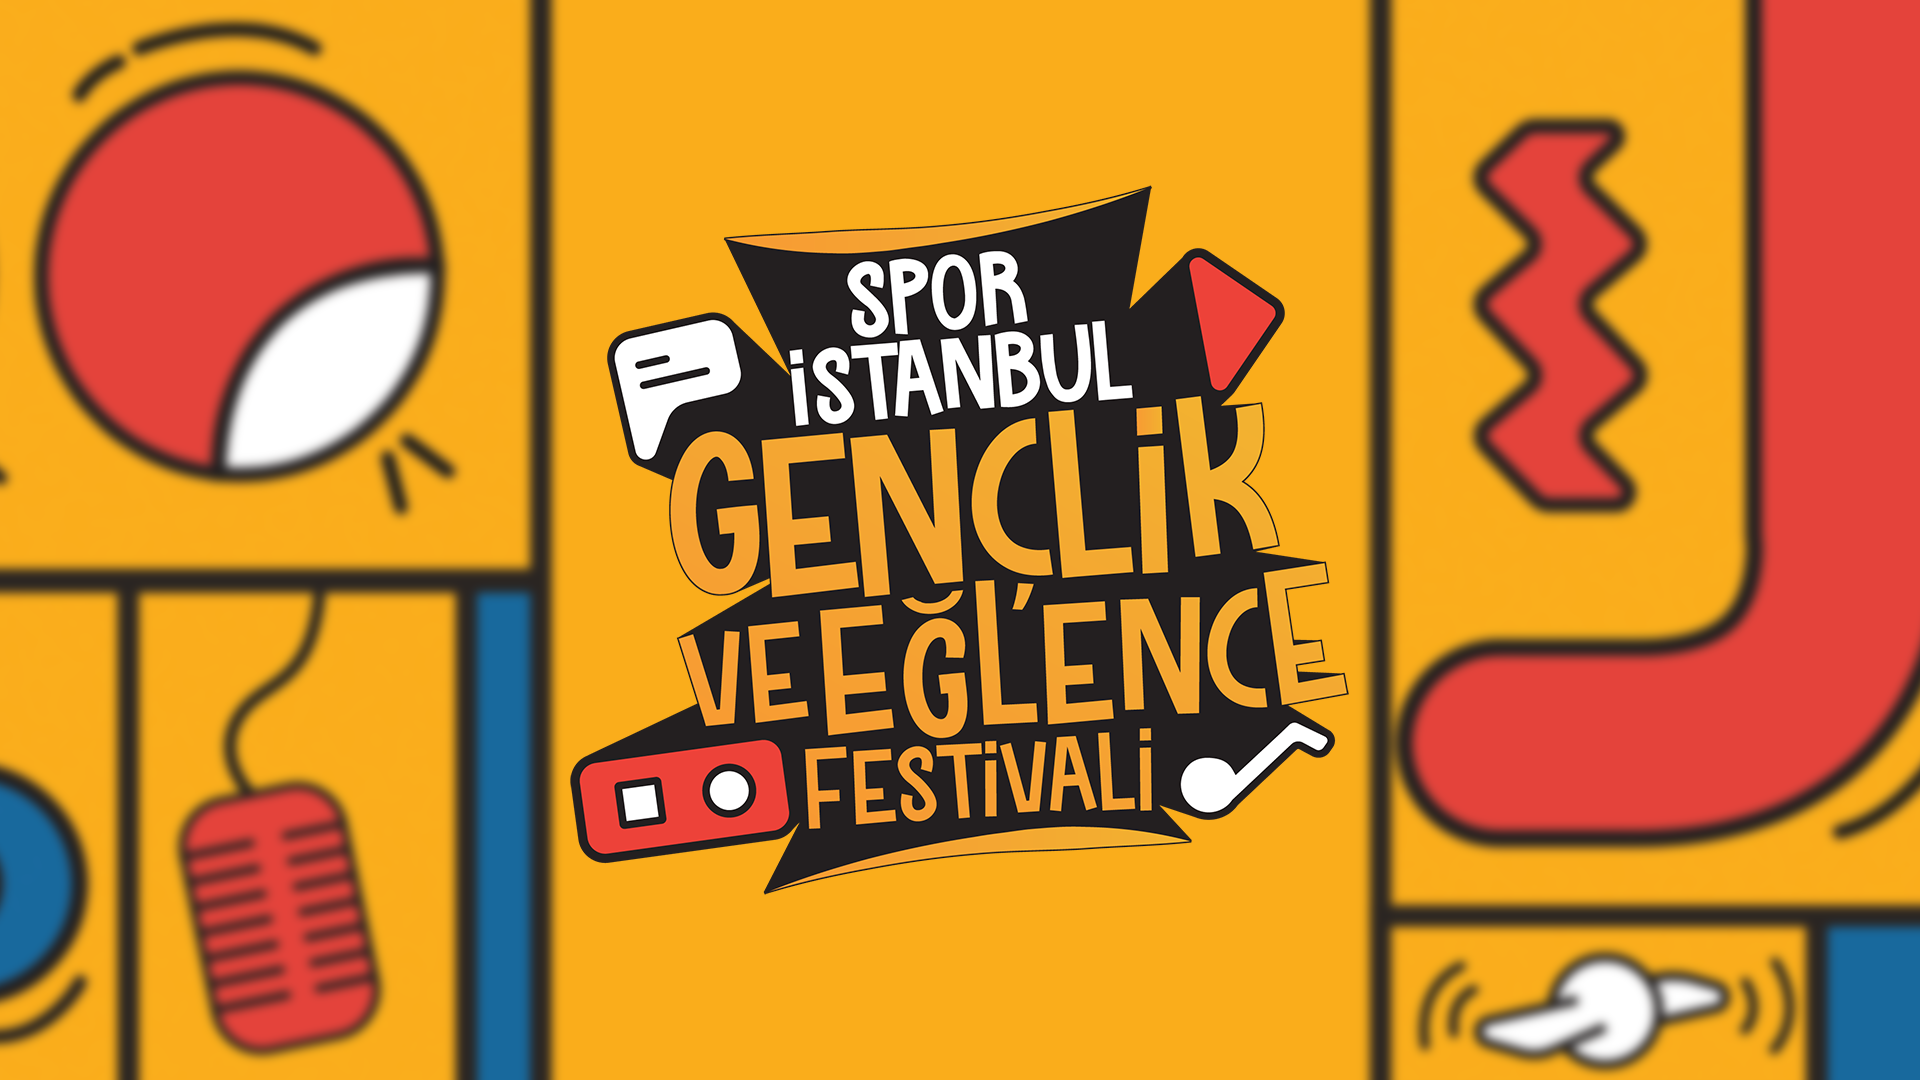 Spor İstanbul Gençlik ve Eğlence Festivali için geri sayım başladı!